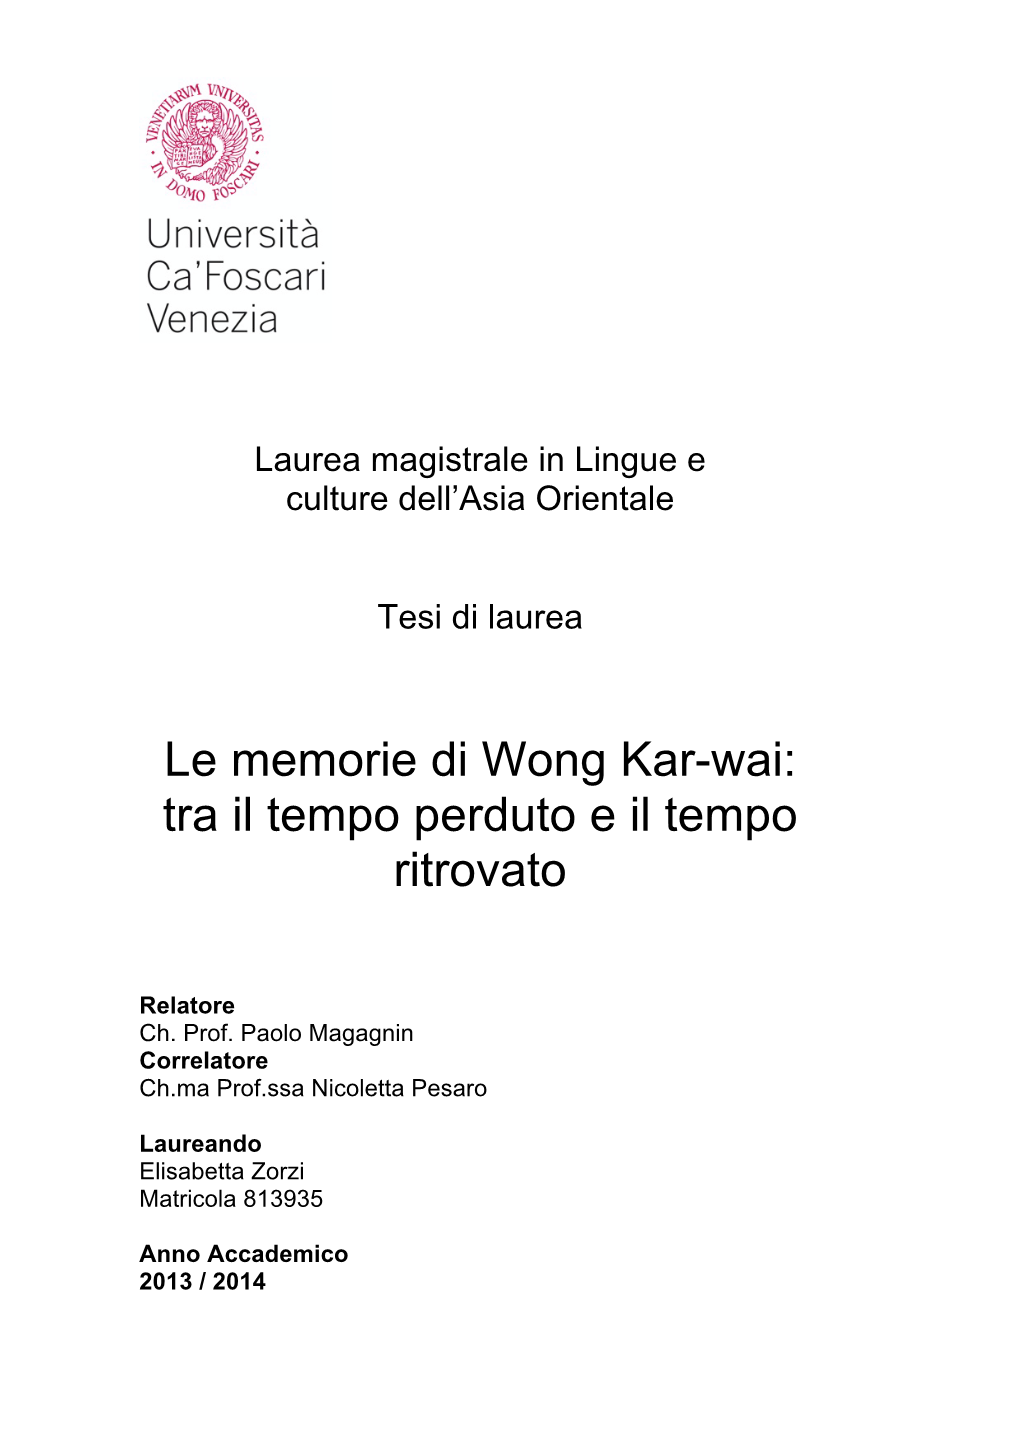 Le Memorie Di Wong Kar-Wai: Tra Il Tempo Perduto E Il Tempo Ritrovato